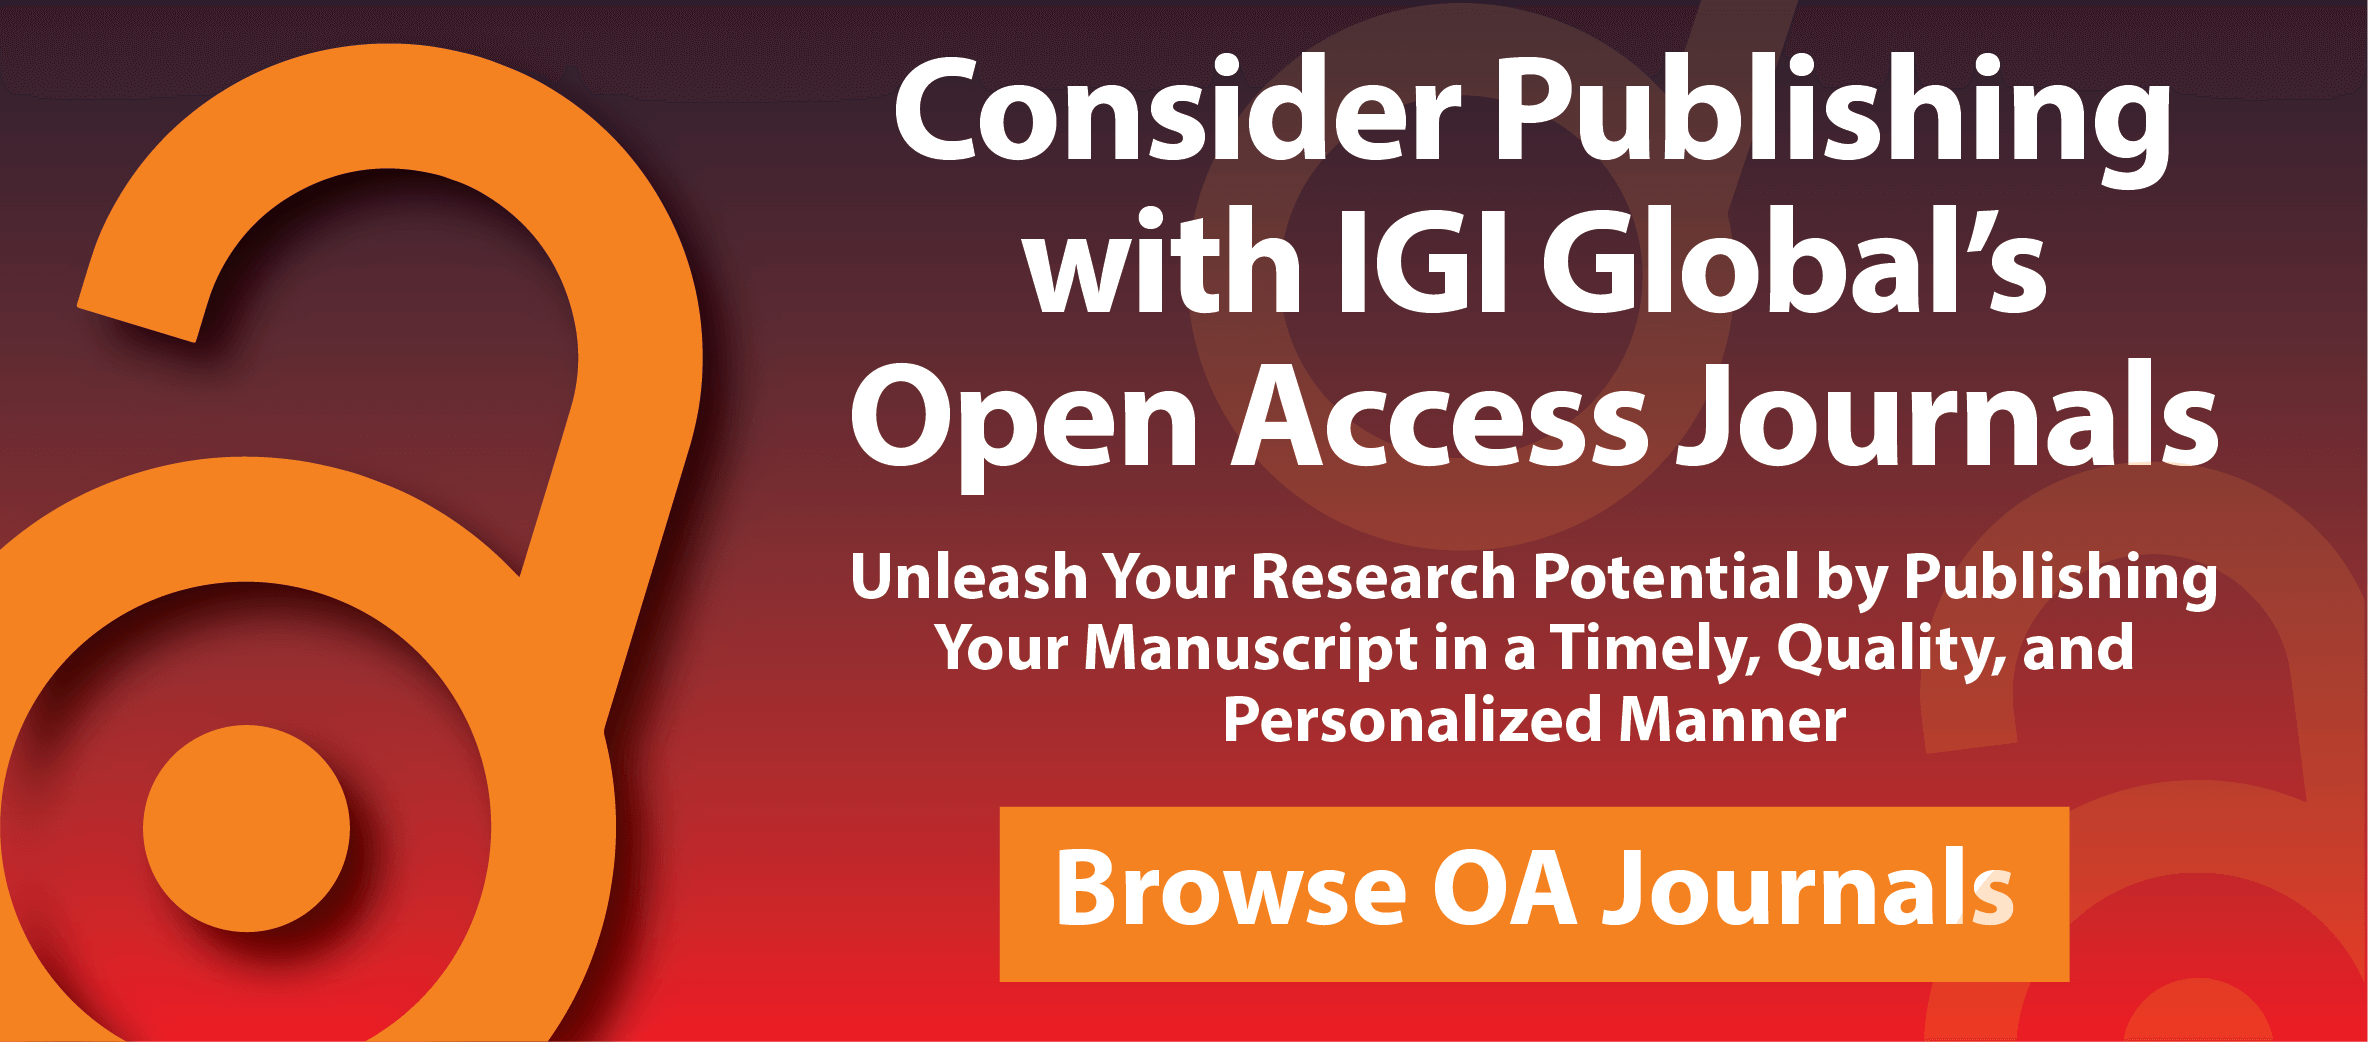 OA Publish With IGI Global